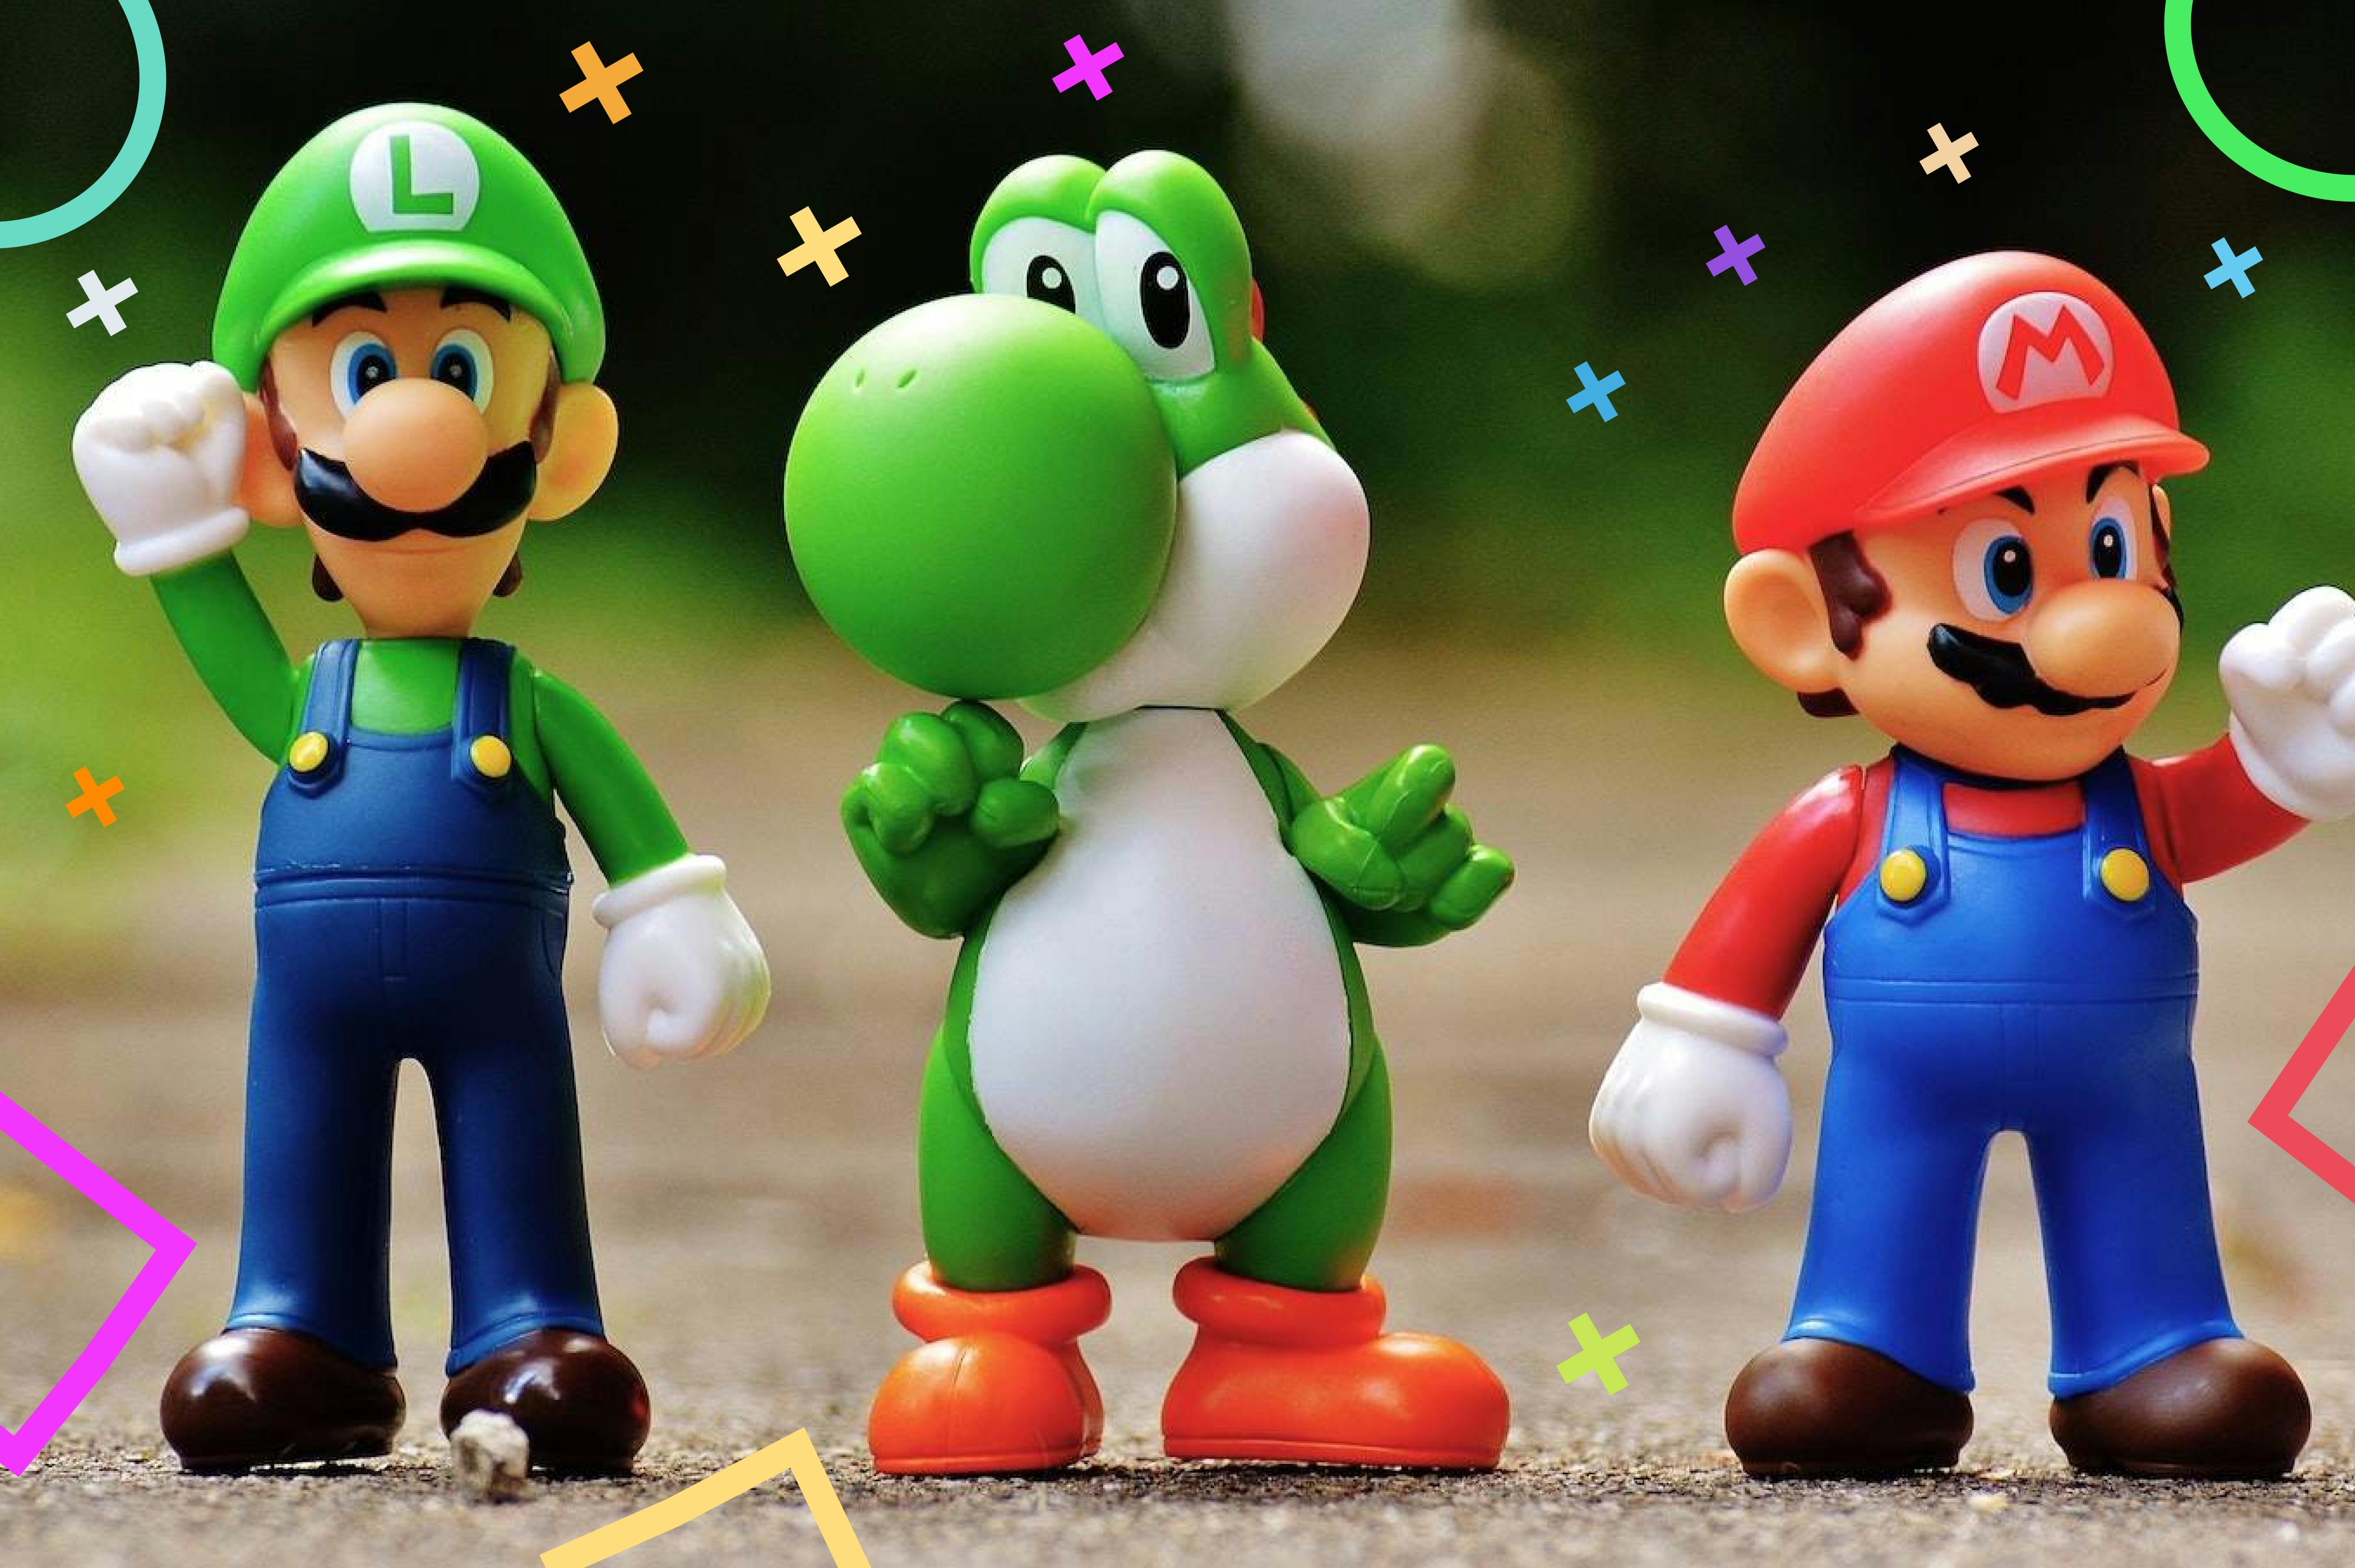 Game Characters - Mario Luigi Yoshi